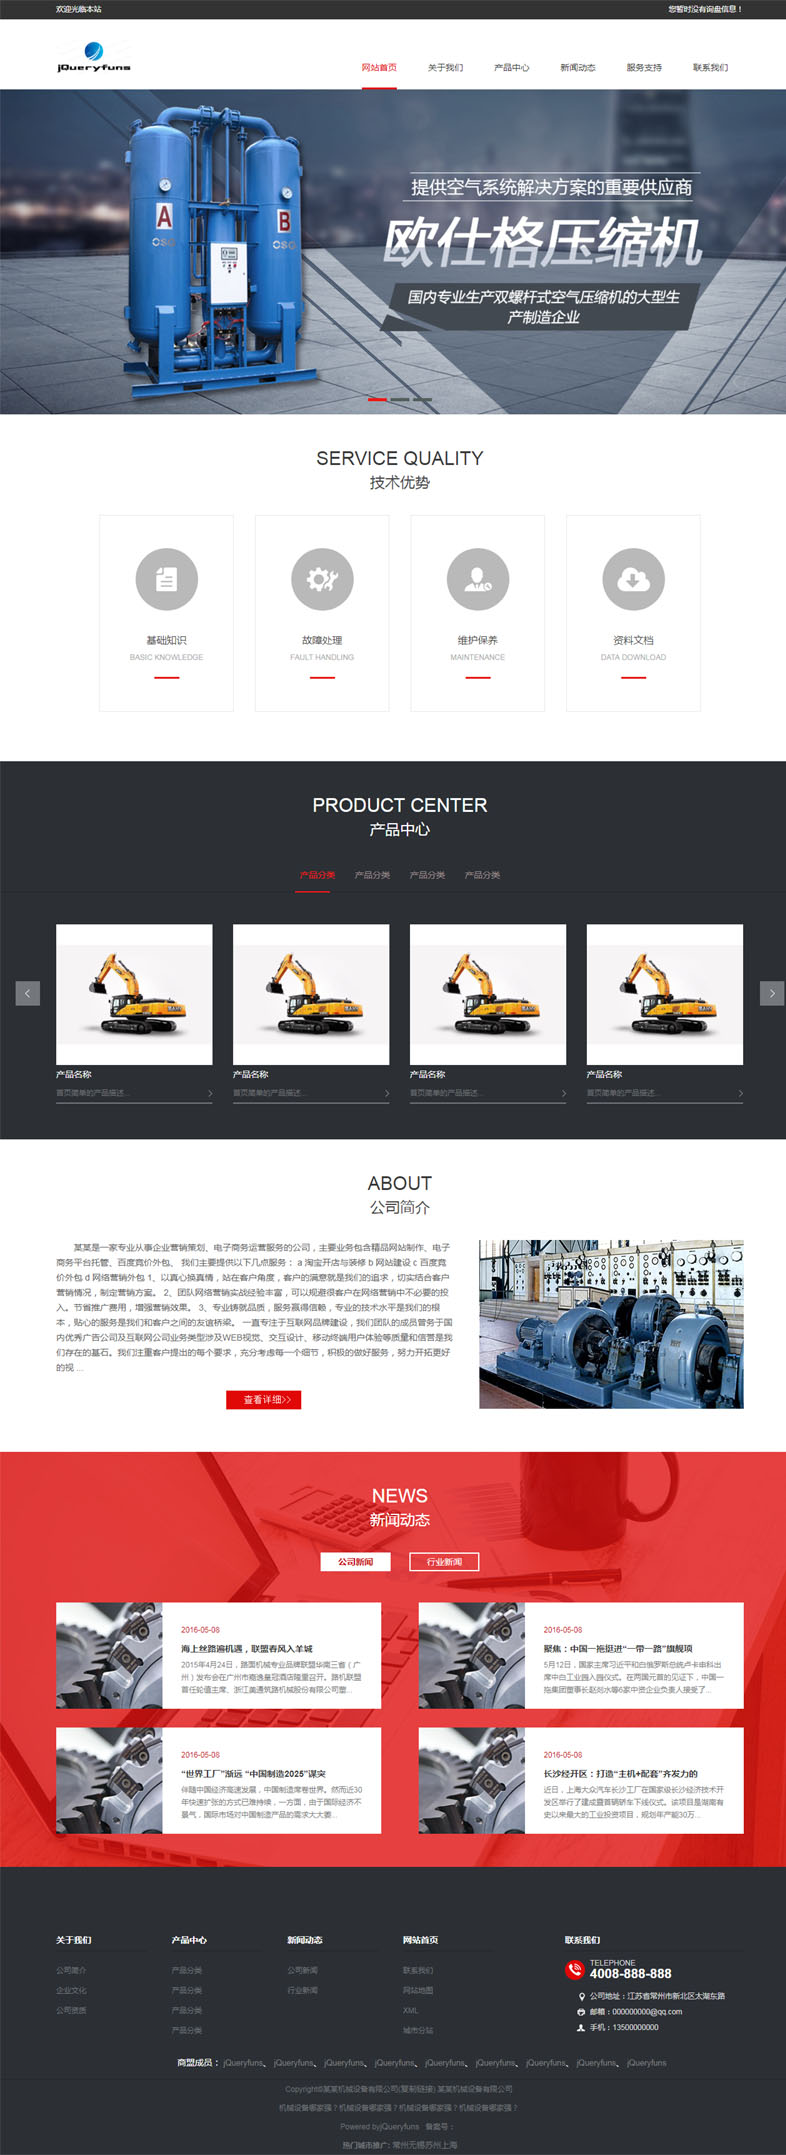 响应式工业设备企业网站Bootstrap模板6059